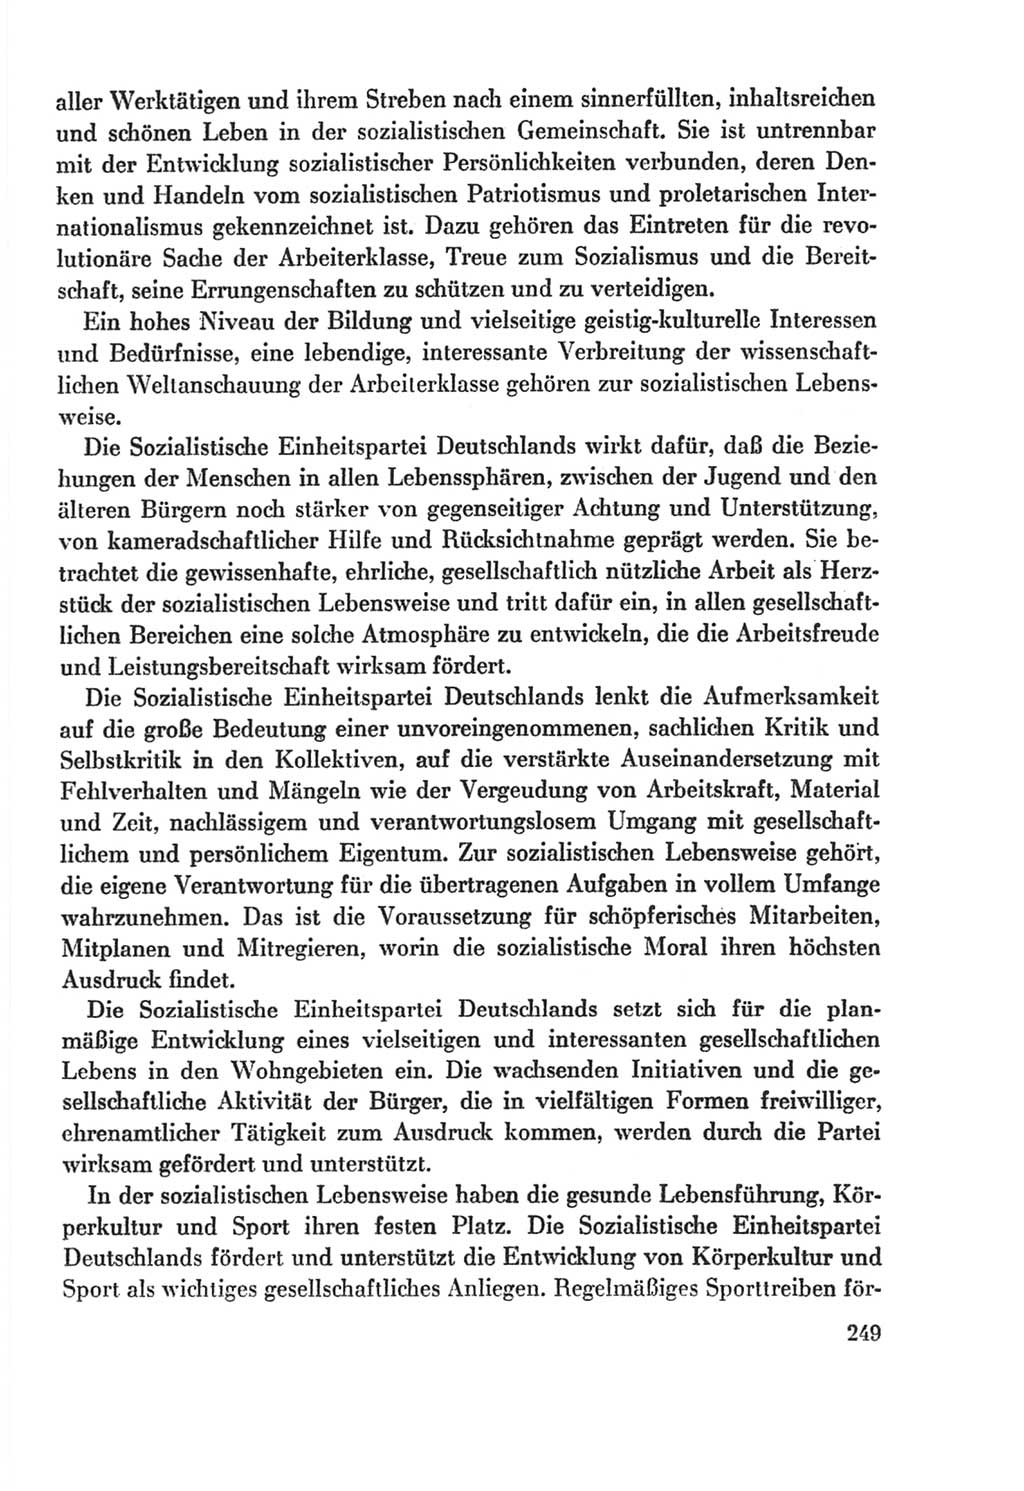 Protokoll der Verhandlungen des Ⅸ. Parteitages der Sozialistischen Einheitspartei Deutschlands (SED) [Deutsche Demokratische Republik (DDR)] 1976, Band 2, Seite 249 (Prot. Verh. Ⅸ. PT SED DDR 1976, Bd. 2, S. 249)